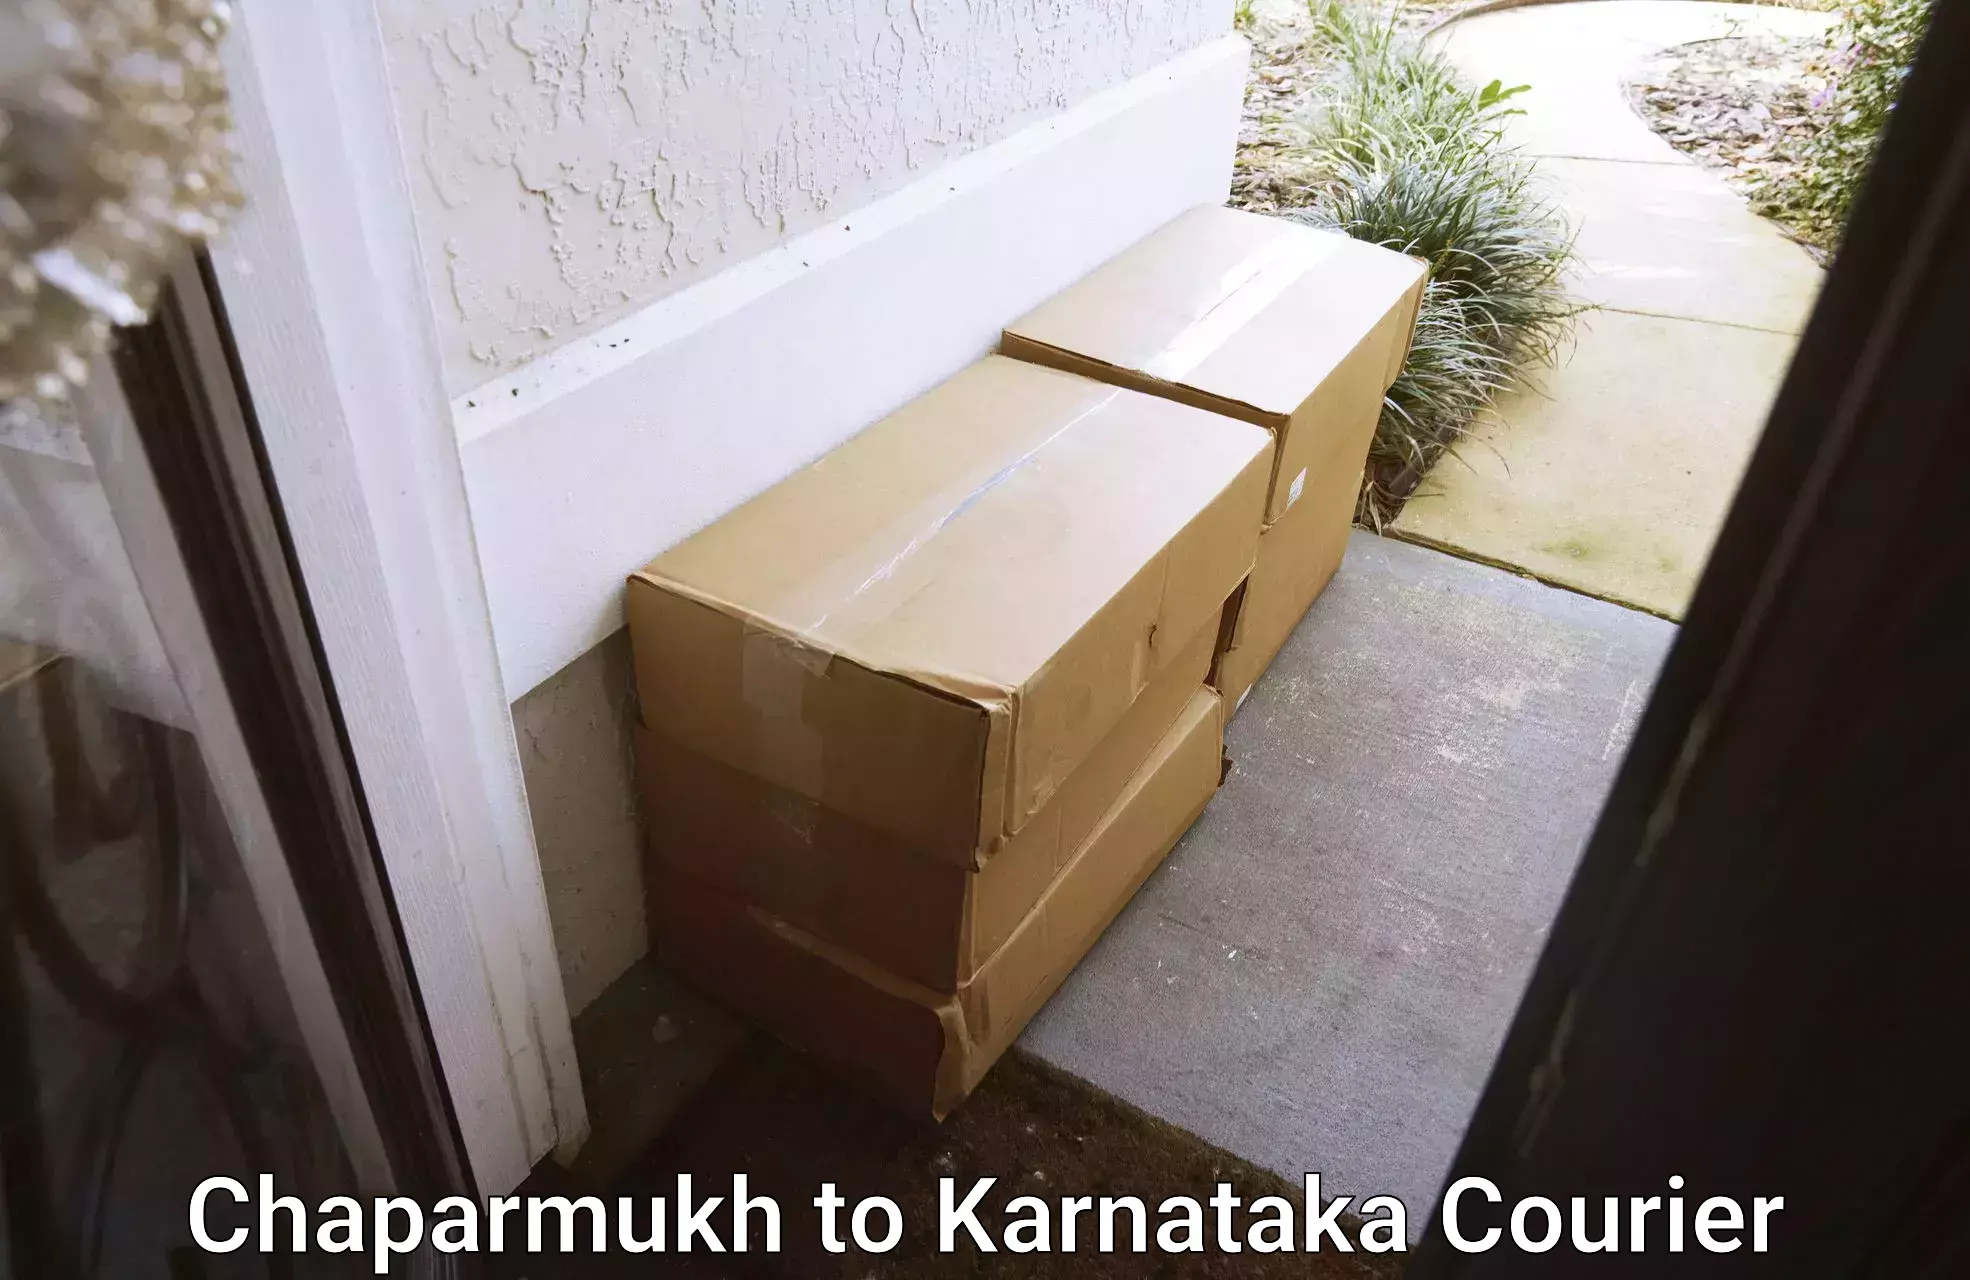 Tech-enabled shipping Chaparmukh to Karnataka